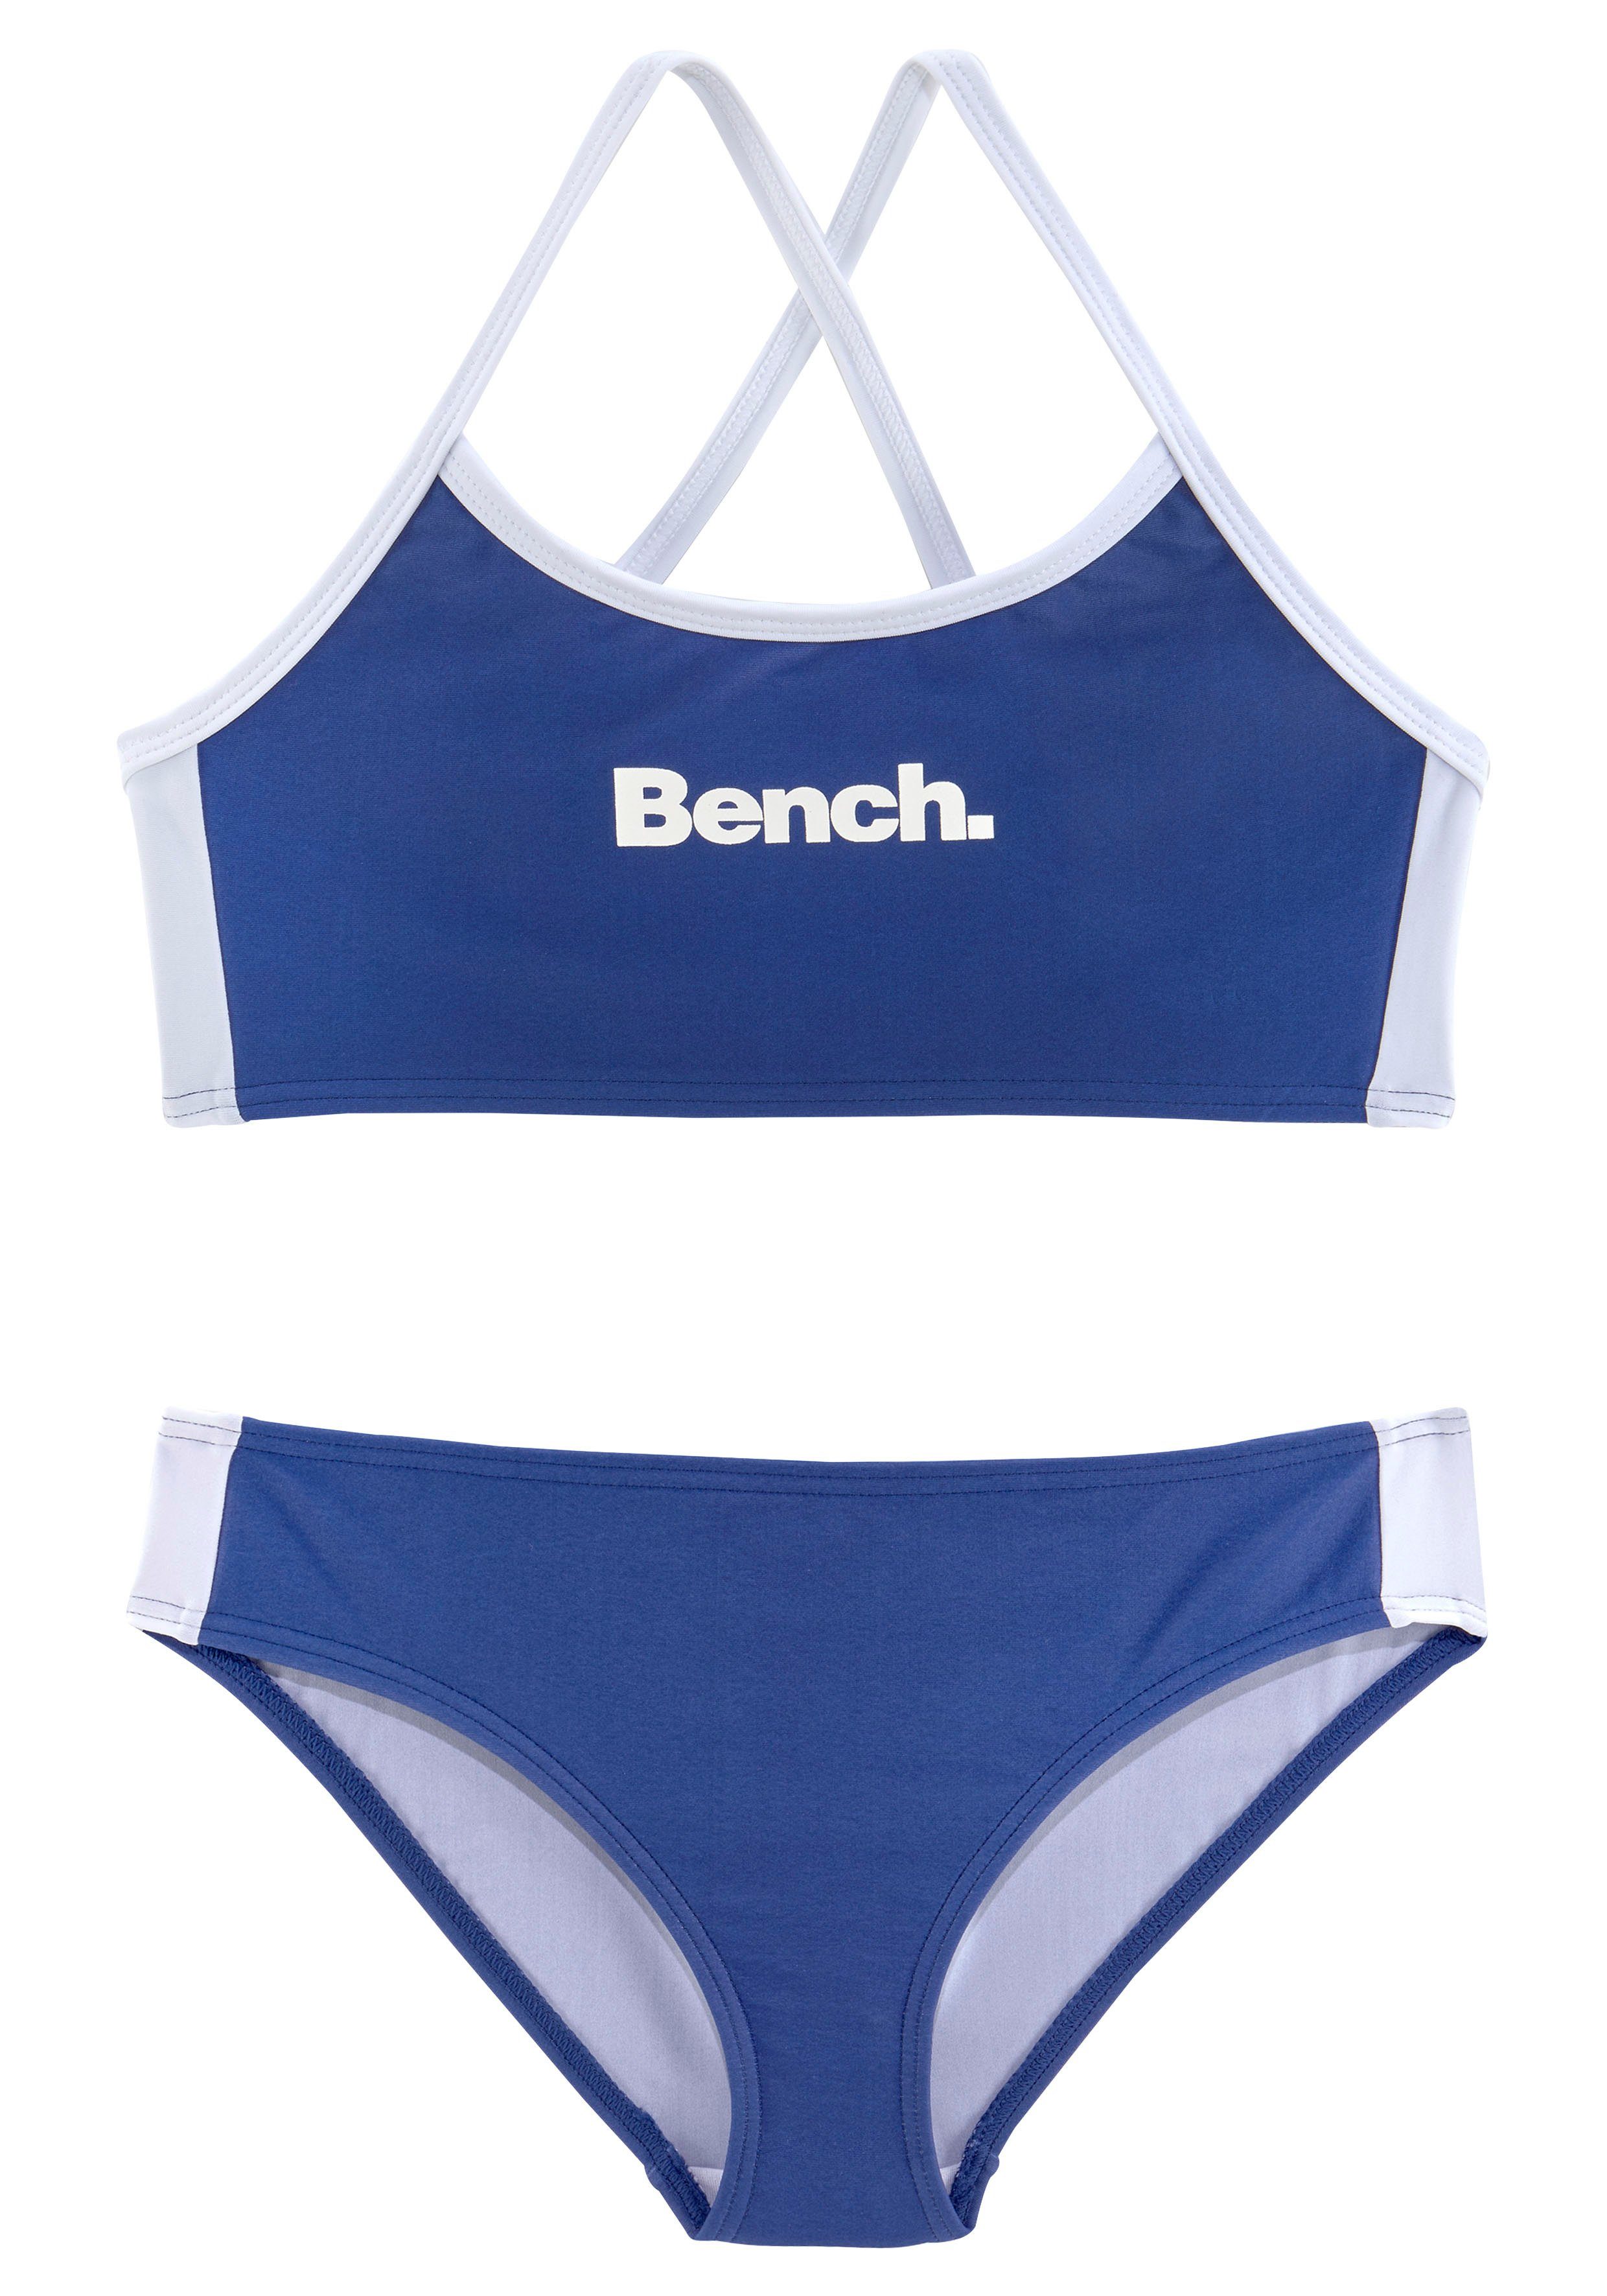 Bench. Bustier-Bikini mit blau-weiß Trägern gekreuzten